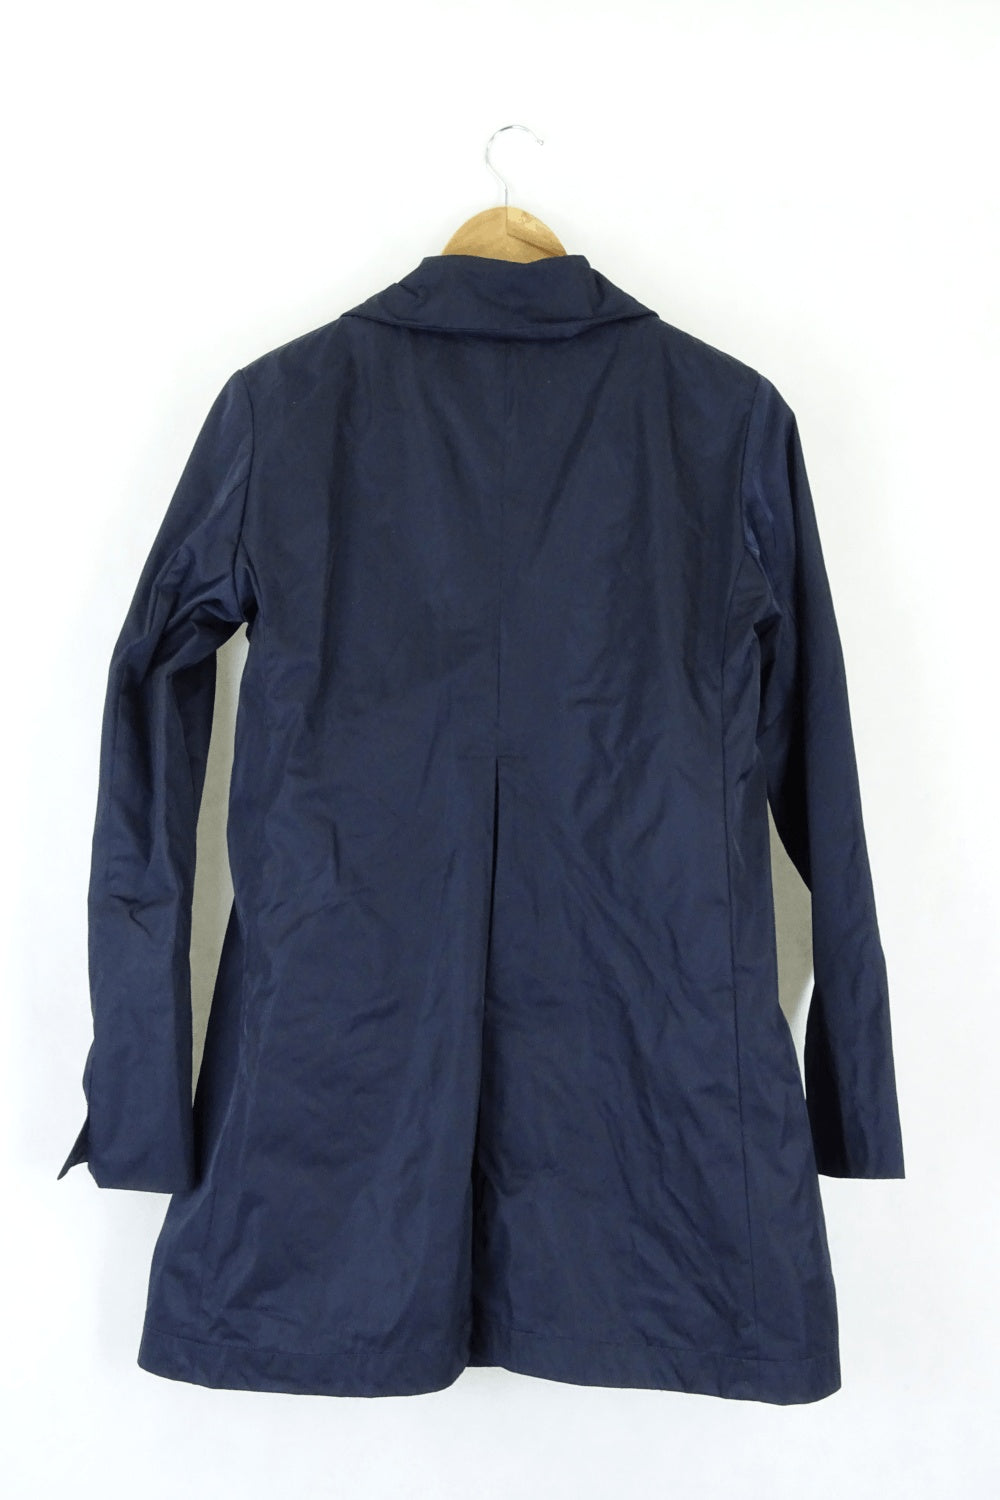 Brooks Brothers Navy Rain Jacket 4